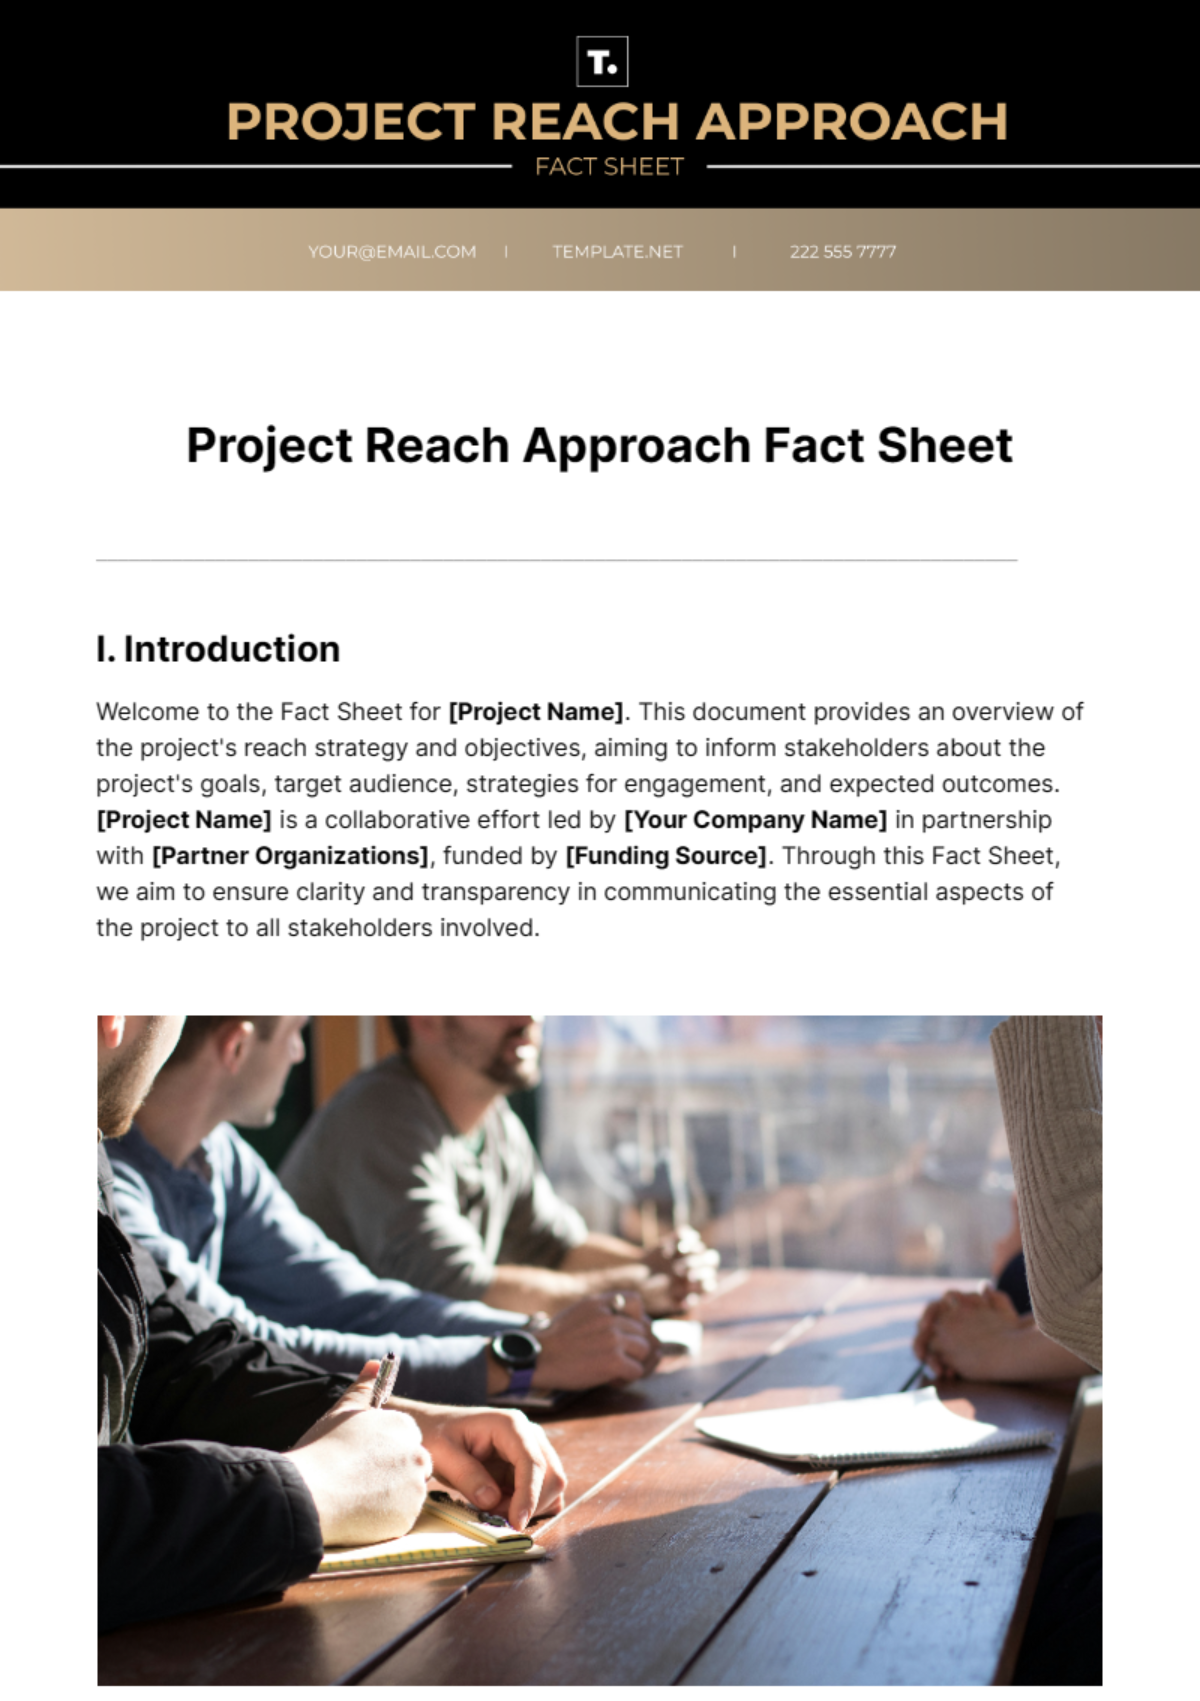 Project Reach Approach Fact Sheet Template